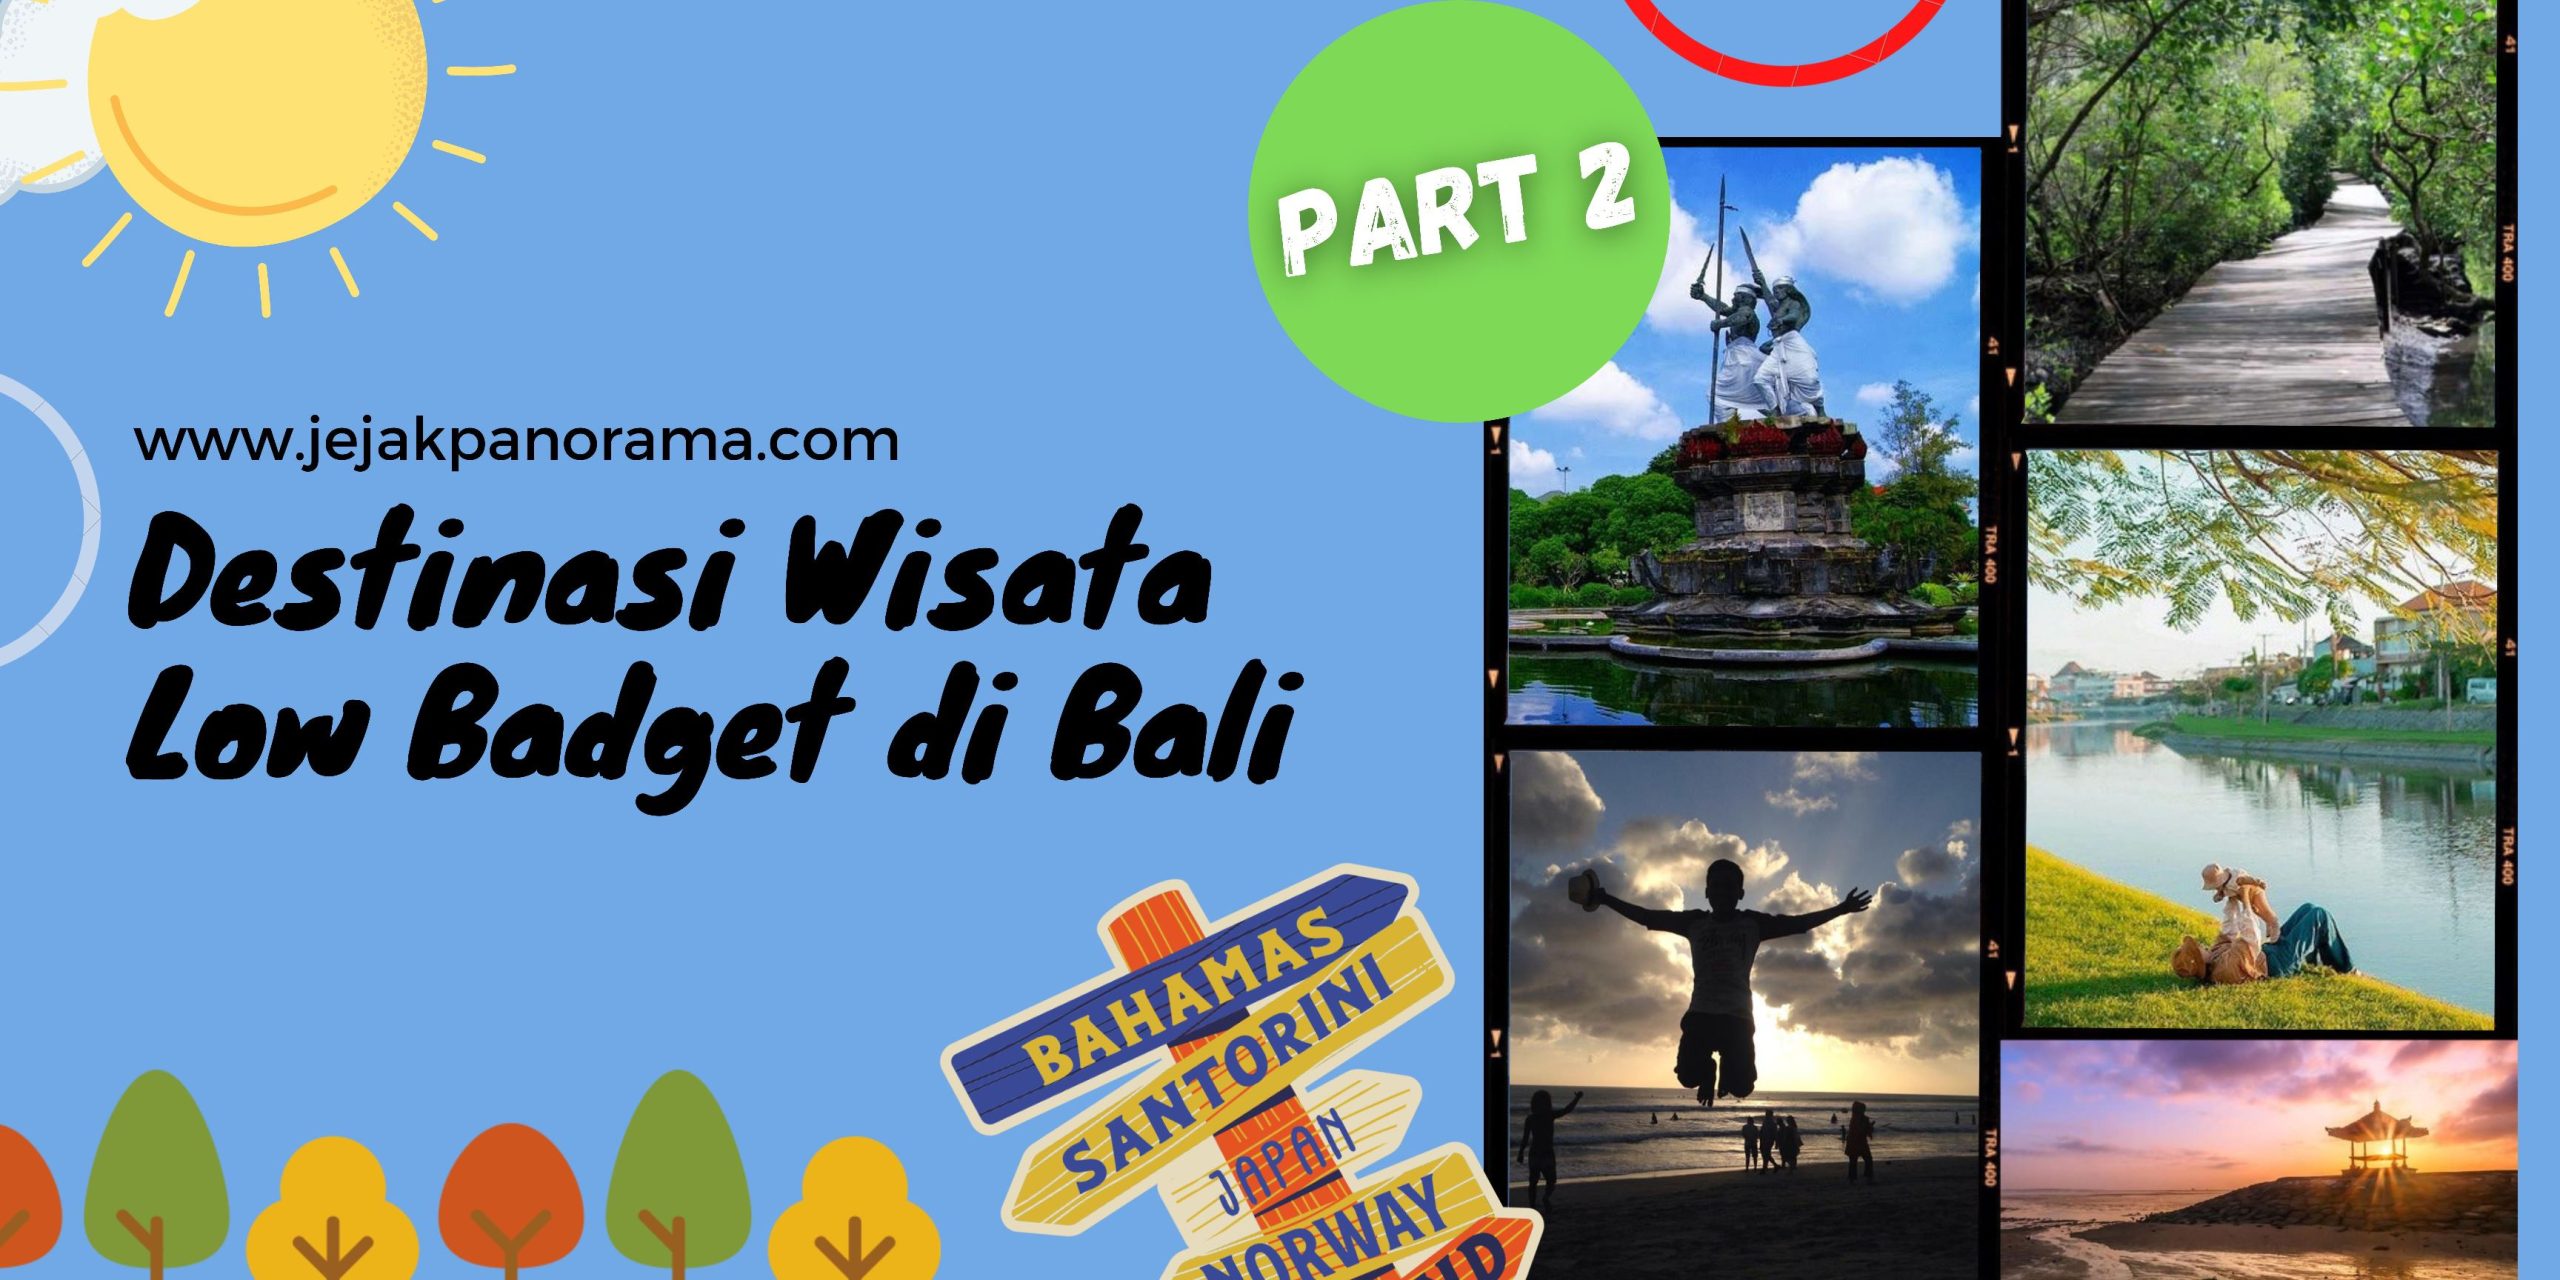 Wisata Low Budget Bali